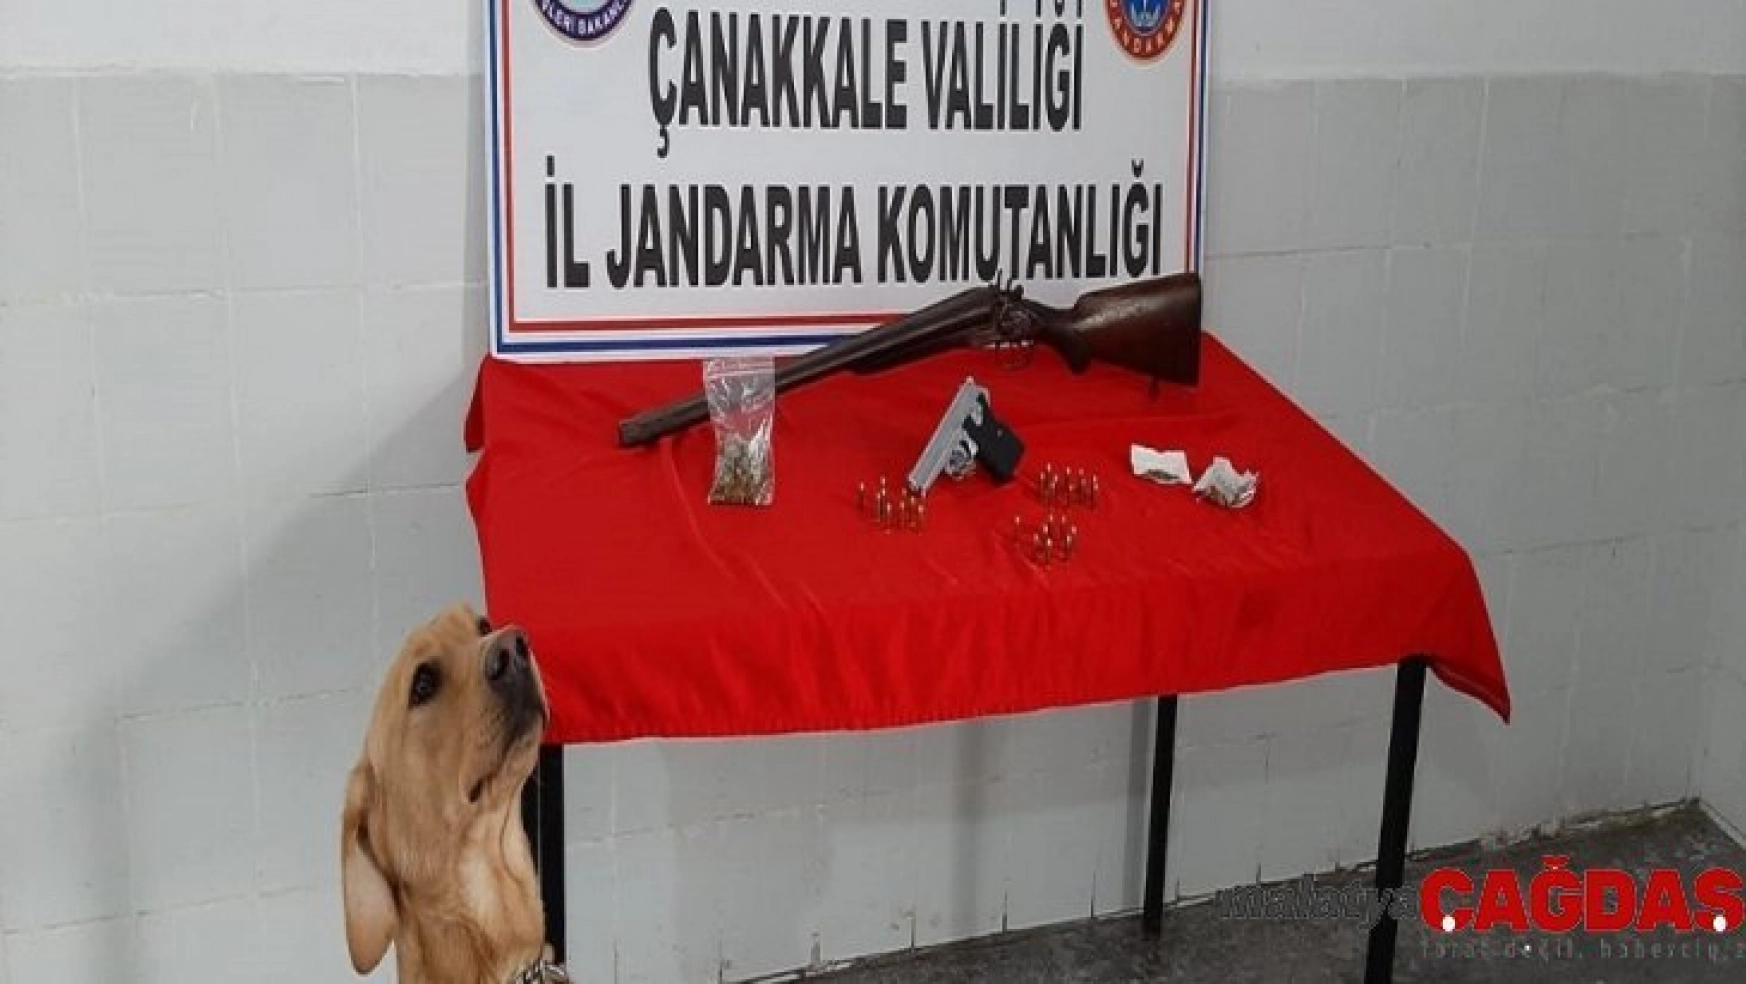 Çanakkale'de uyuşturucu operasyonu: 2 gözaltı